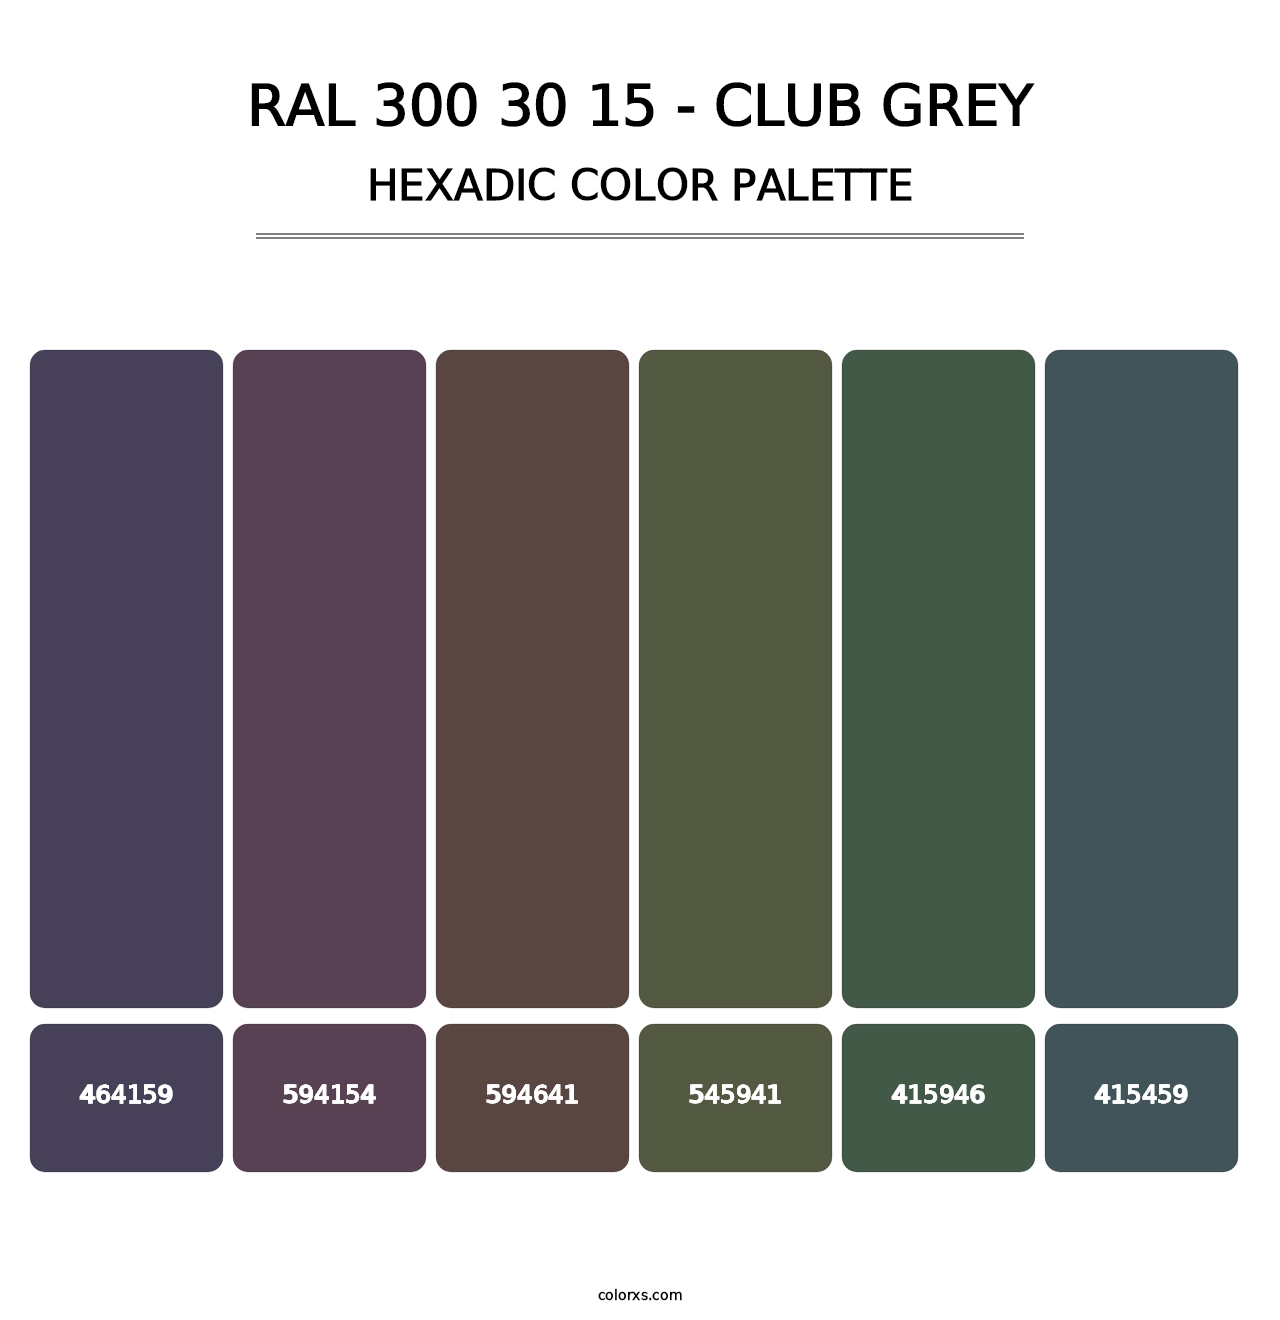 RAL 300 30 15 - Club Grey - Hexadic Color Palette